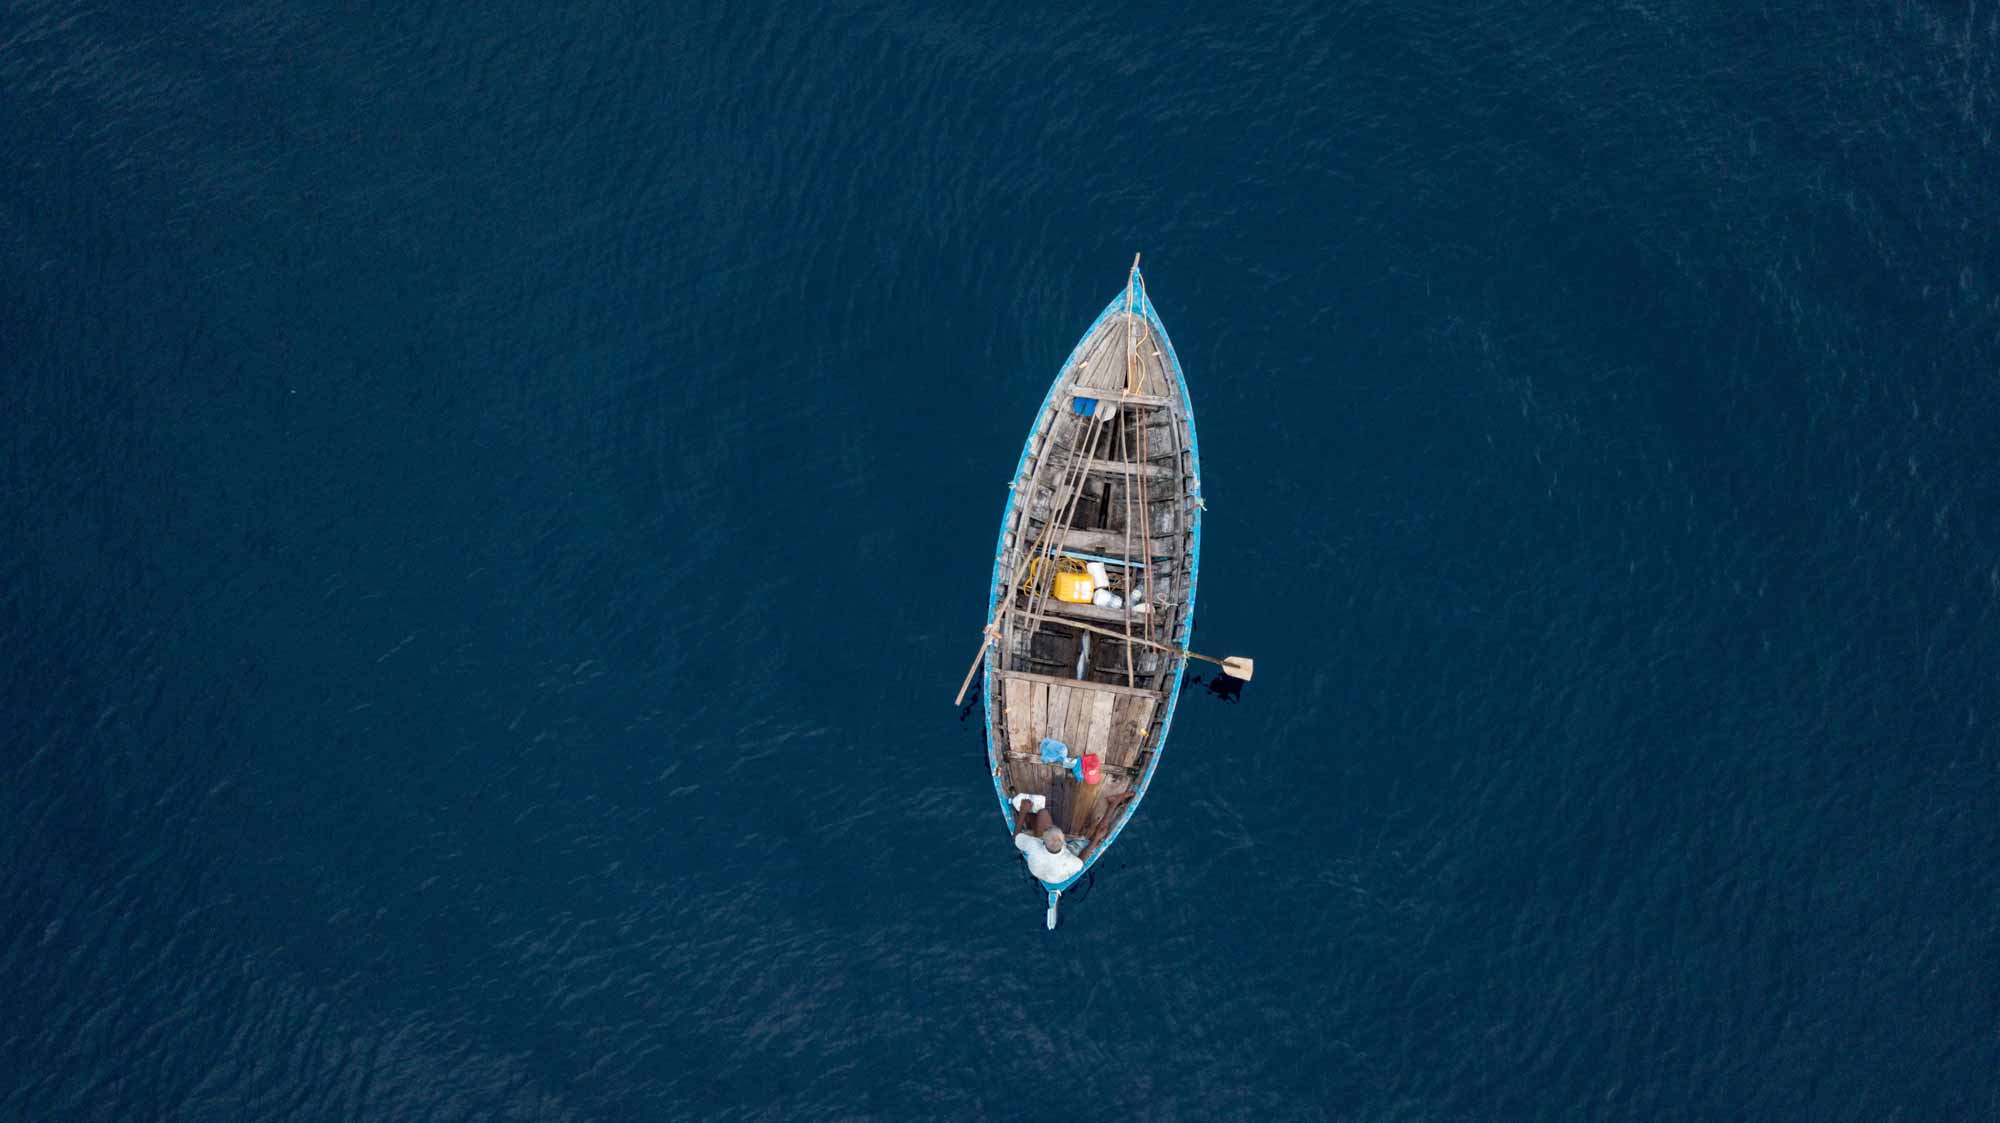 Pohled na člun zmítaný na otevřeném moři